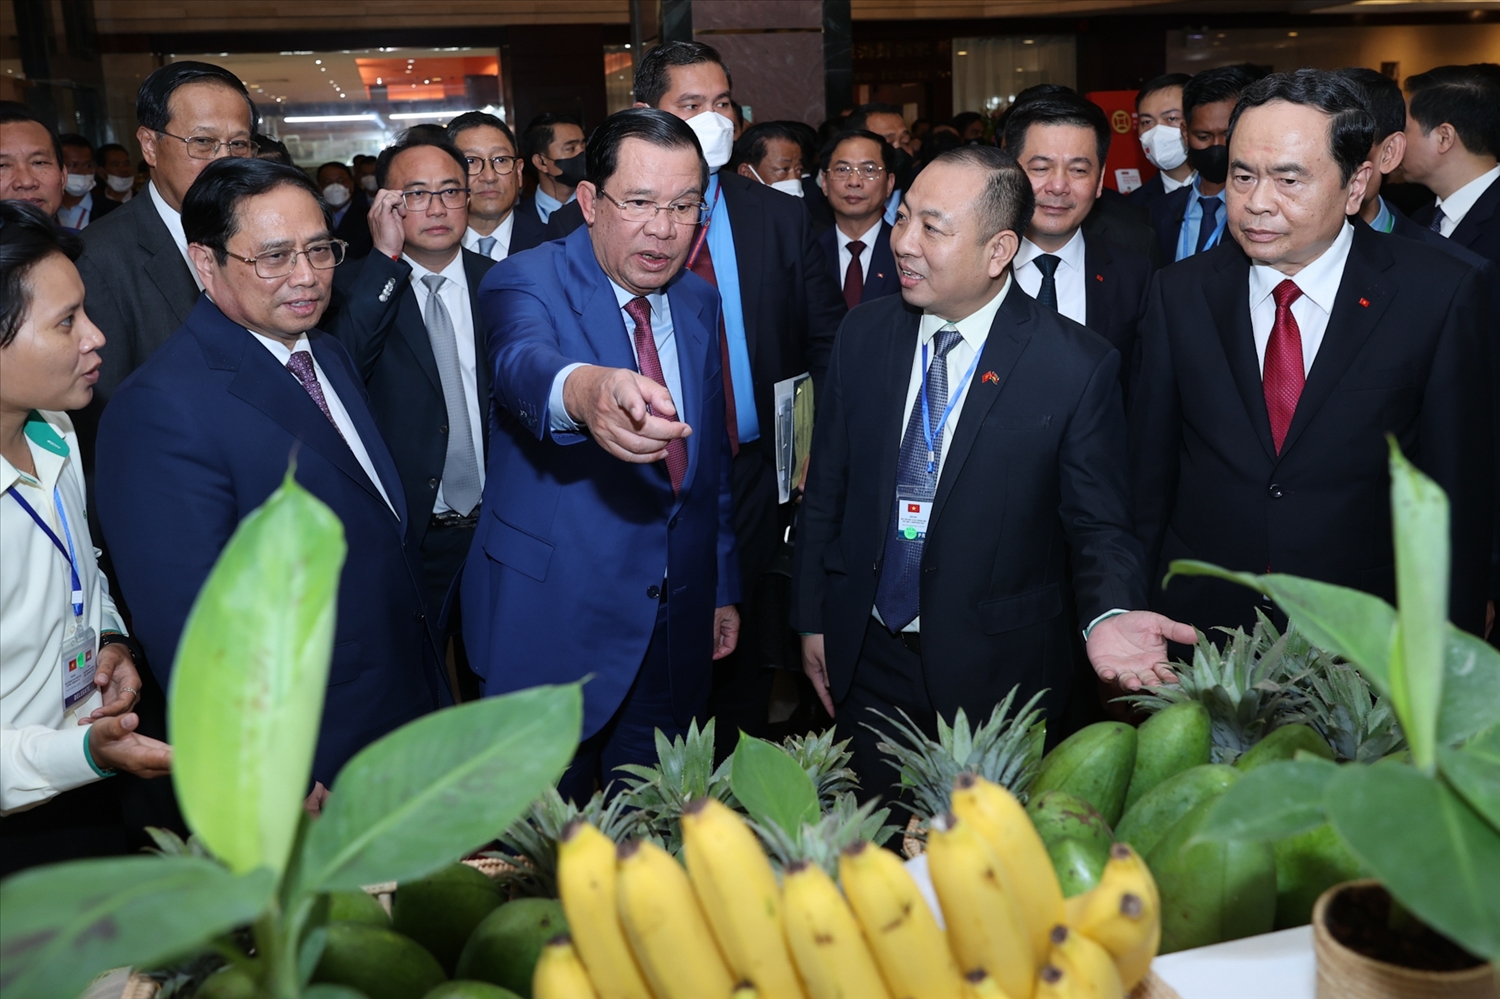 Thủ tướng Chính phủ Phạm Minh Chính cùng Thủ tướng Vương quốc Campuchia Samdech Techo Hun Sen tham quan một số gian hàng giới thiệu về sản phẩm của doanh nghiệp Việt Nam đầu tư tại Campuchia - Ảnh: VGP/Nhật Bắc